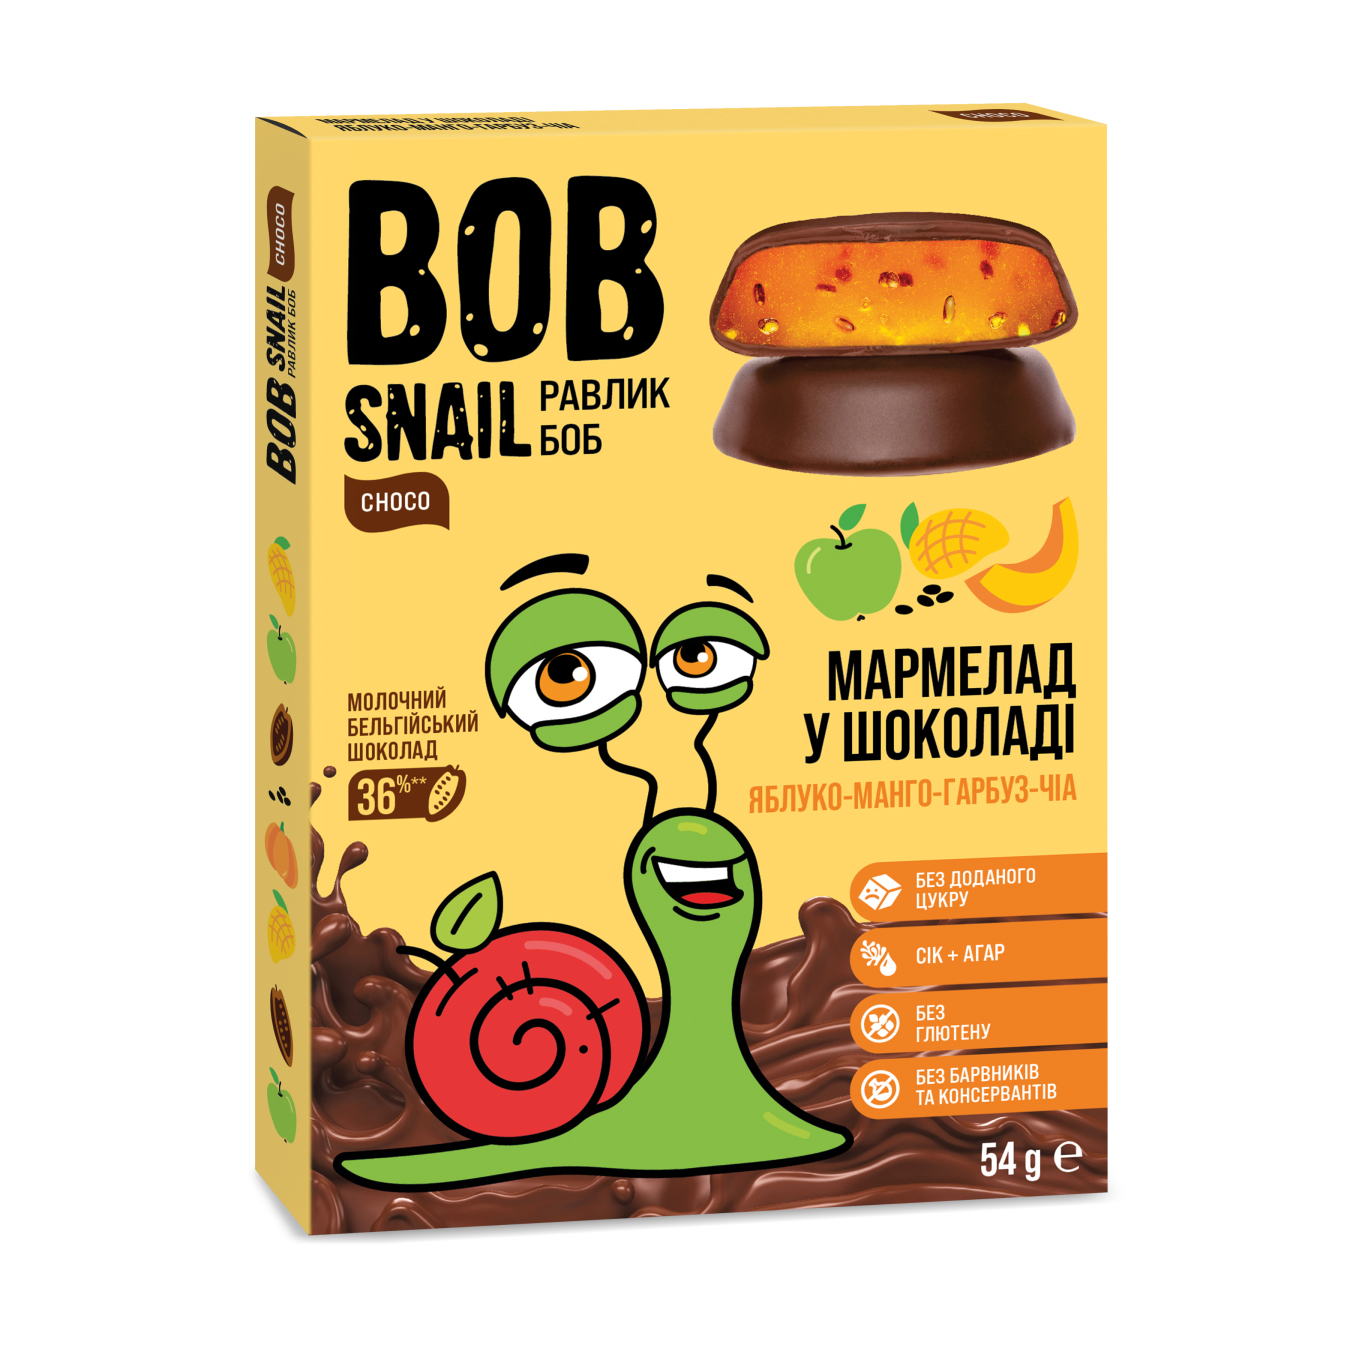 Мармелад Bob Snail яблуко-манго-гарбуз-чіа без цукру 54г